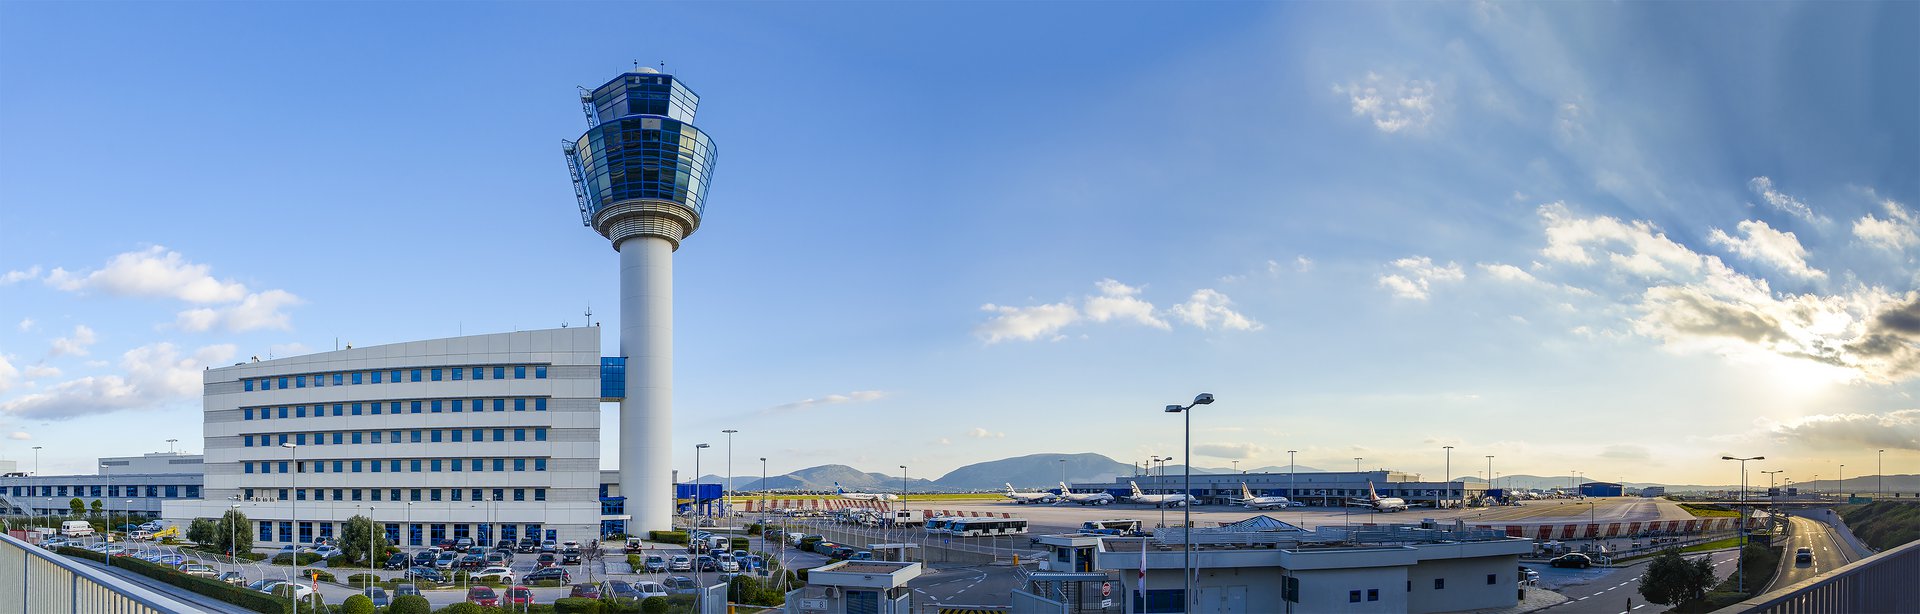 Αρνητική πρωτιά για την Ελλάδα – Από τα αεροδρόμια με τις μεγαλύτερες καθυστερήσεις πτήσεων παγκοσμίως το «Ελ. Βενιζέλος»